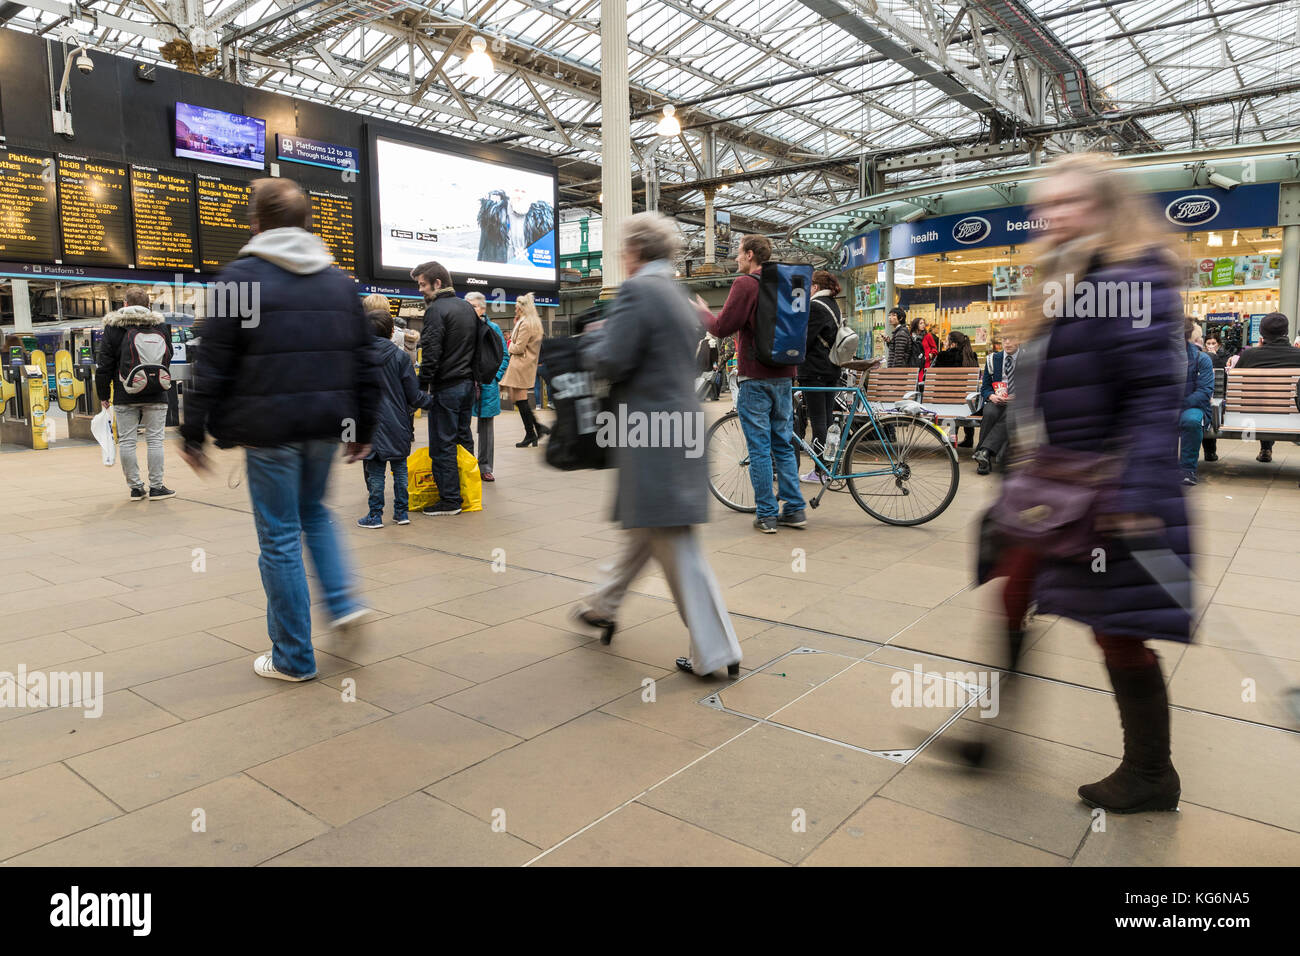 Pendler rush für ihre Bahn während der Rush Hour auf der Bahnhof Edinburgh Waverley. Stockfoto